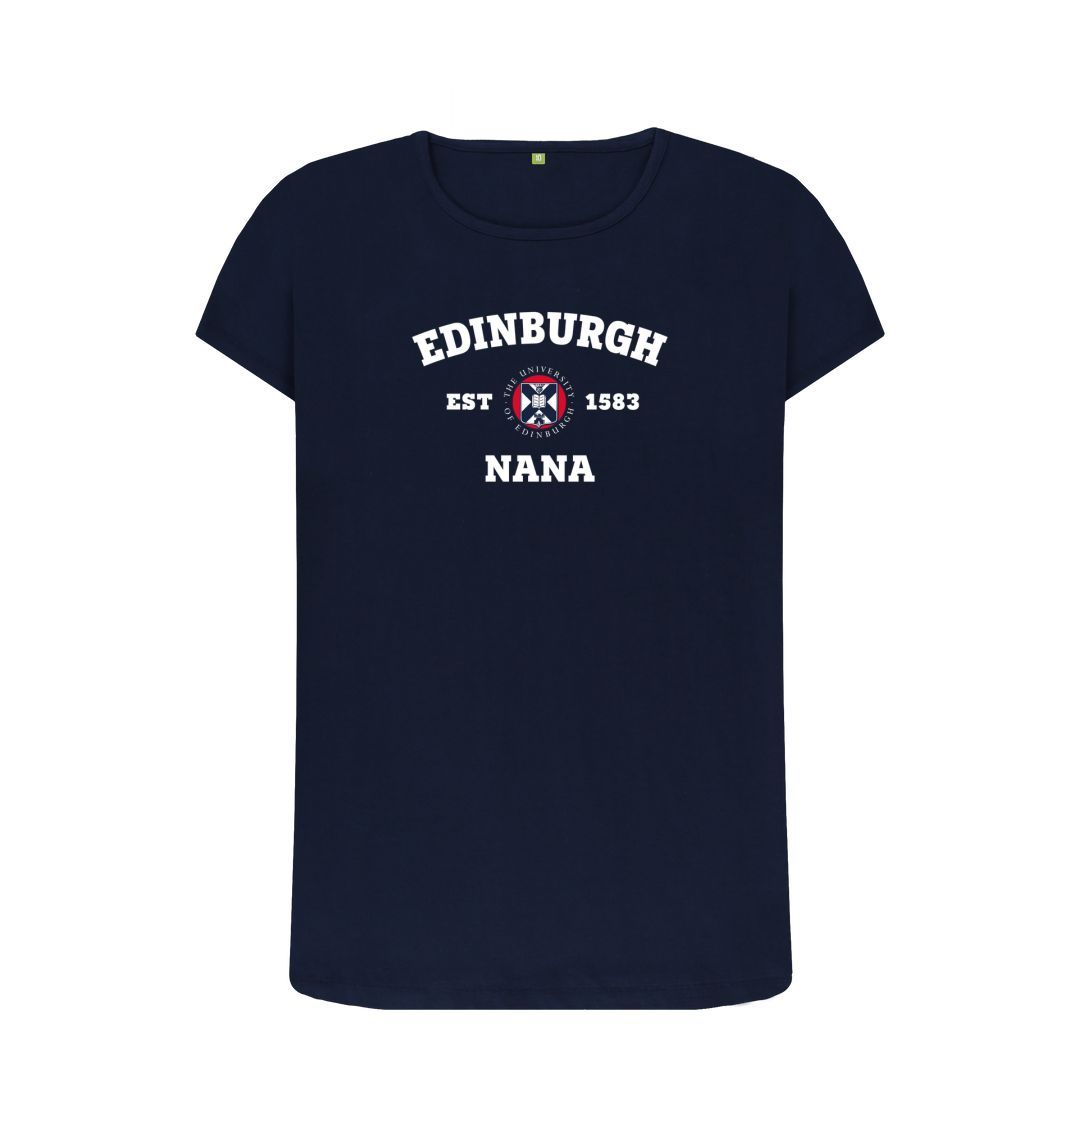 Navy Blue Edinburgh Nana T-shirt